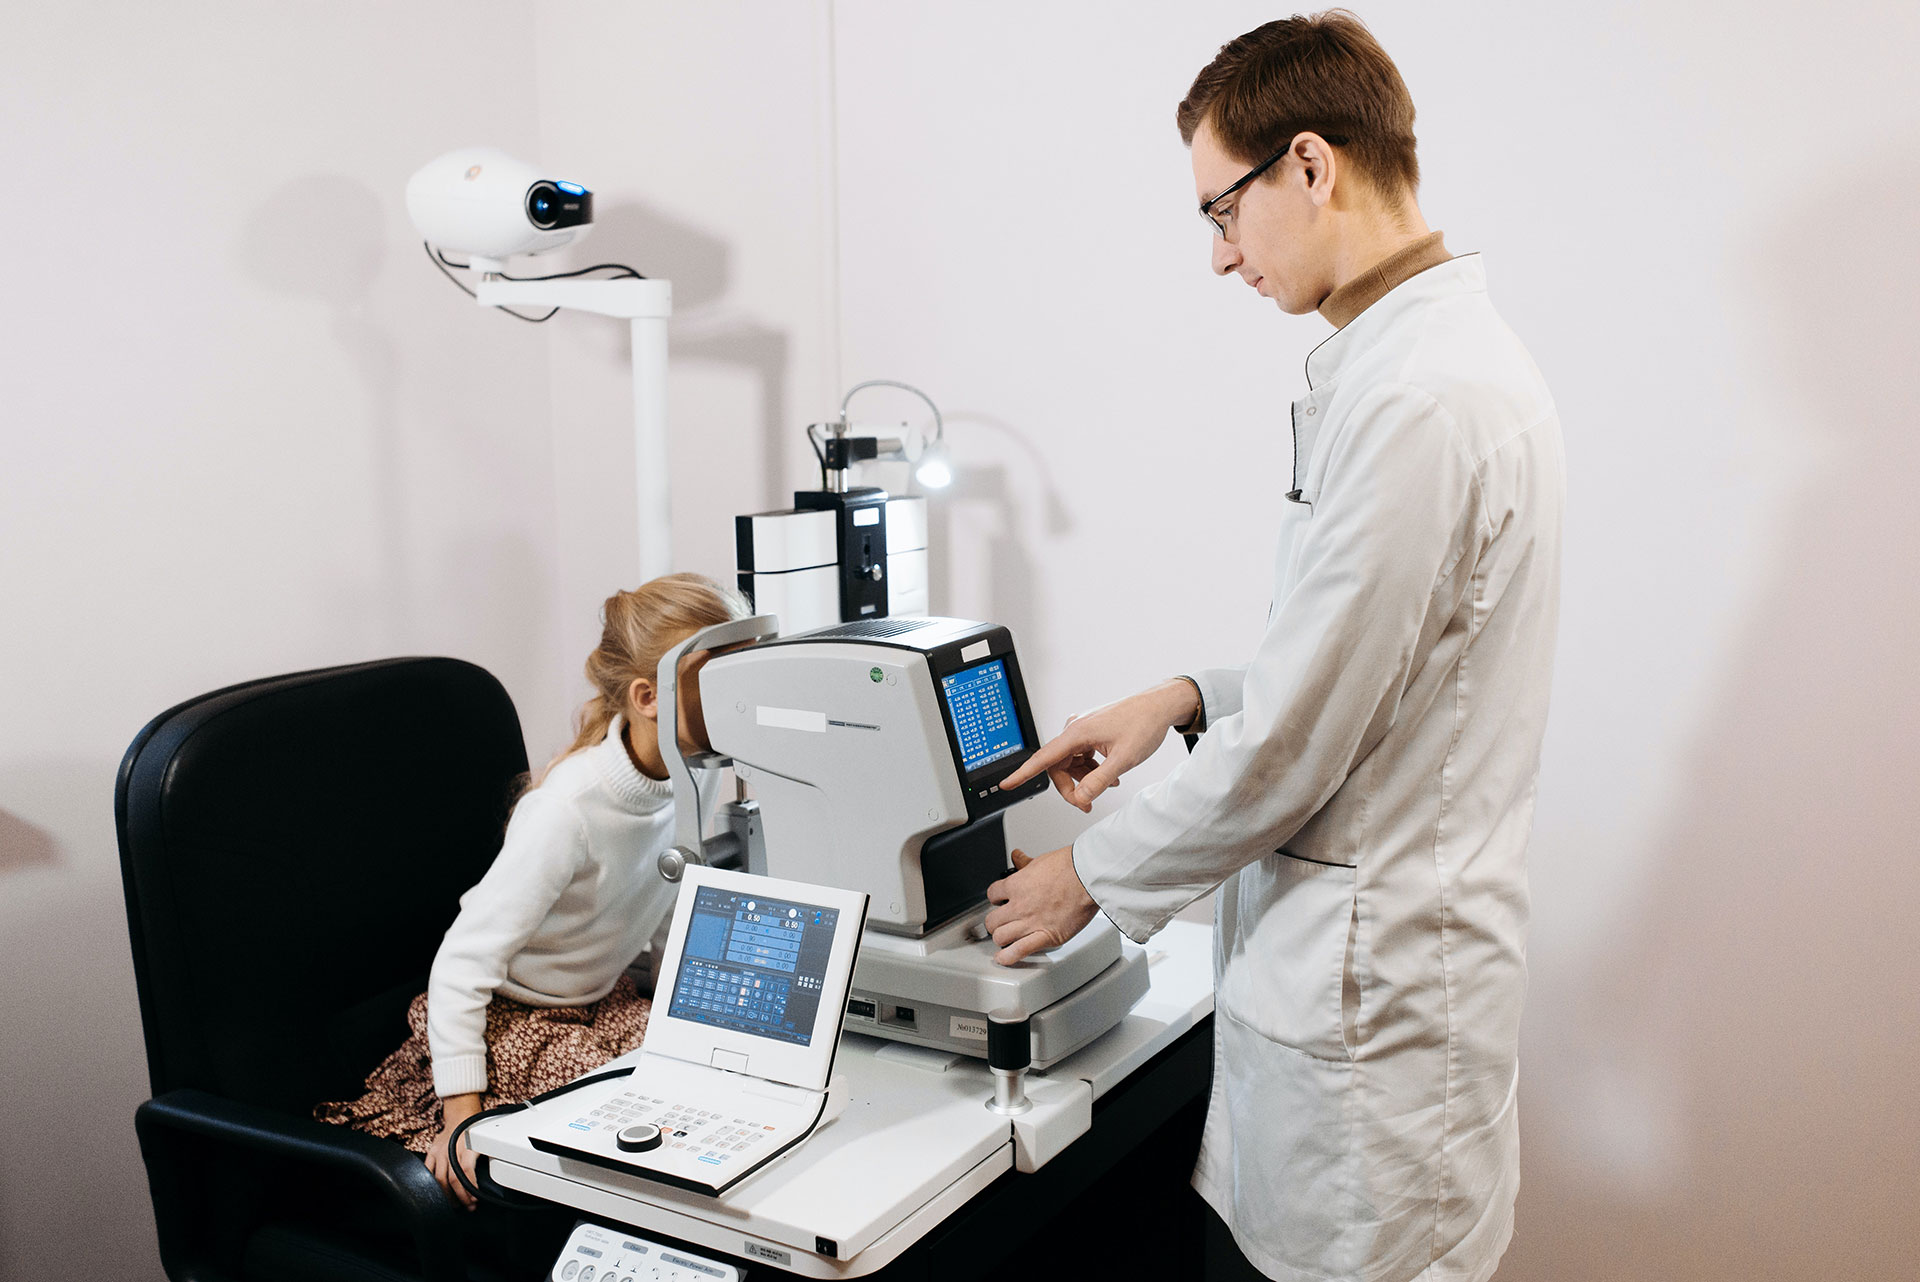 Los padres con problemas de miopía deben llevar a sus hijos a controles oftalmológicos al menos una vez al año (Pexels)